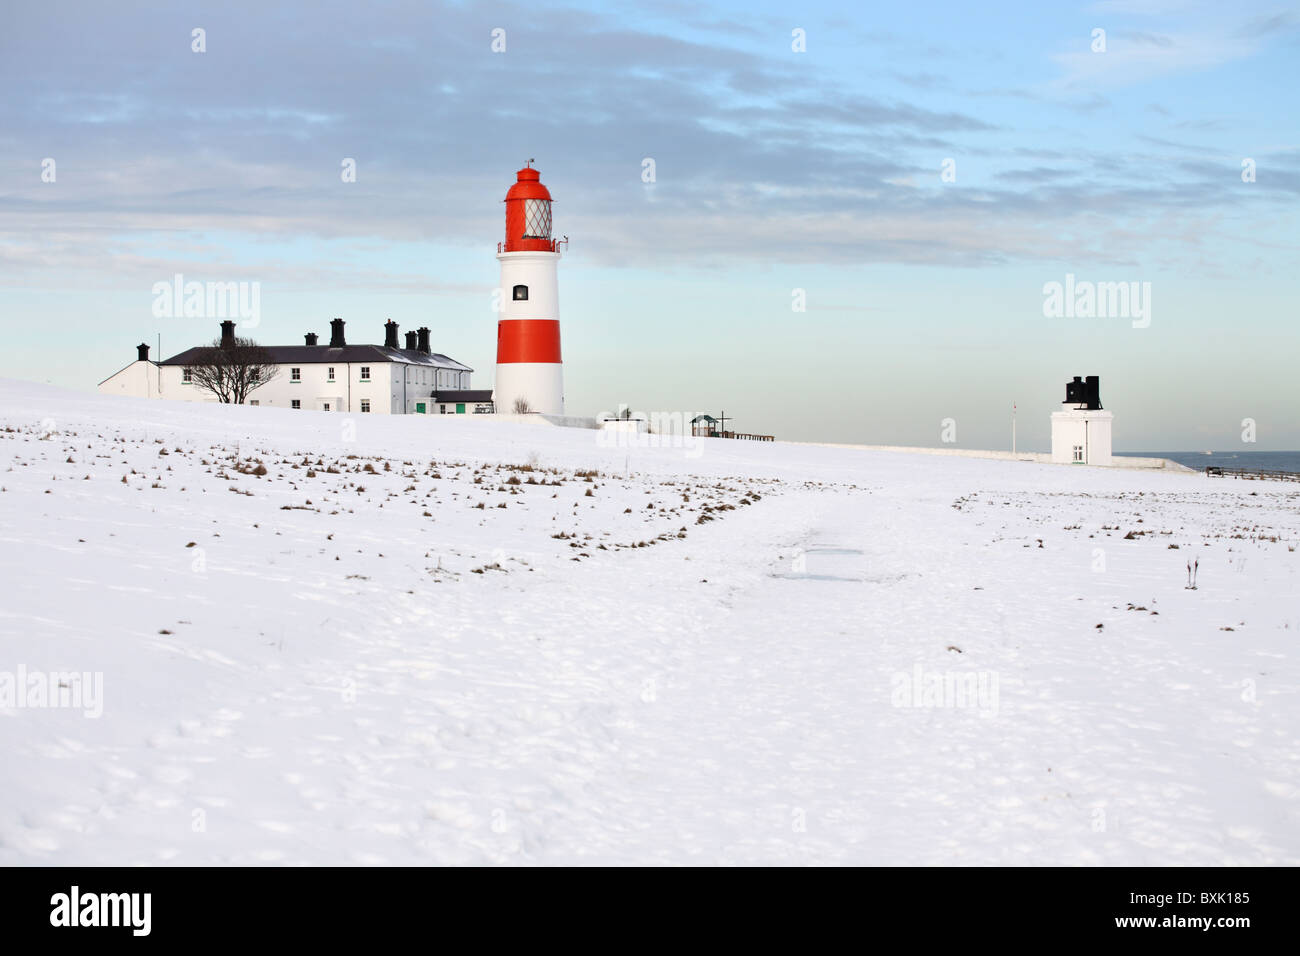 Souter faro e sirena antinebbia, Whitburn, con neve sul terreno. Inghilterra, Regno Unito. Foto Stock